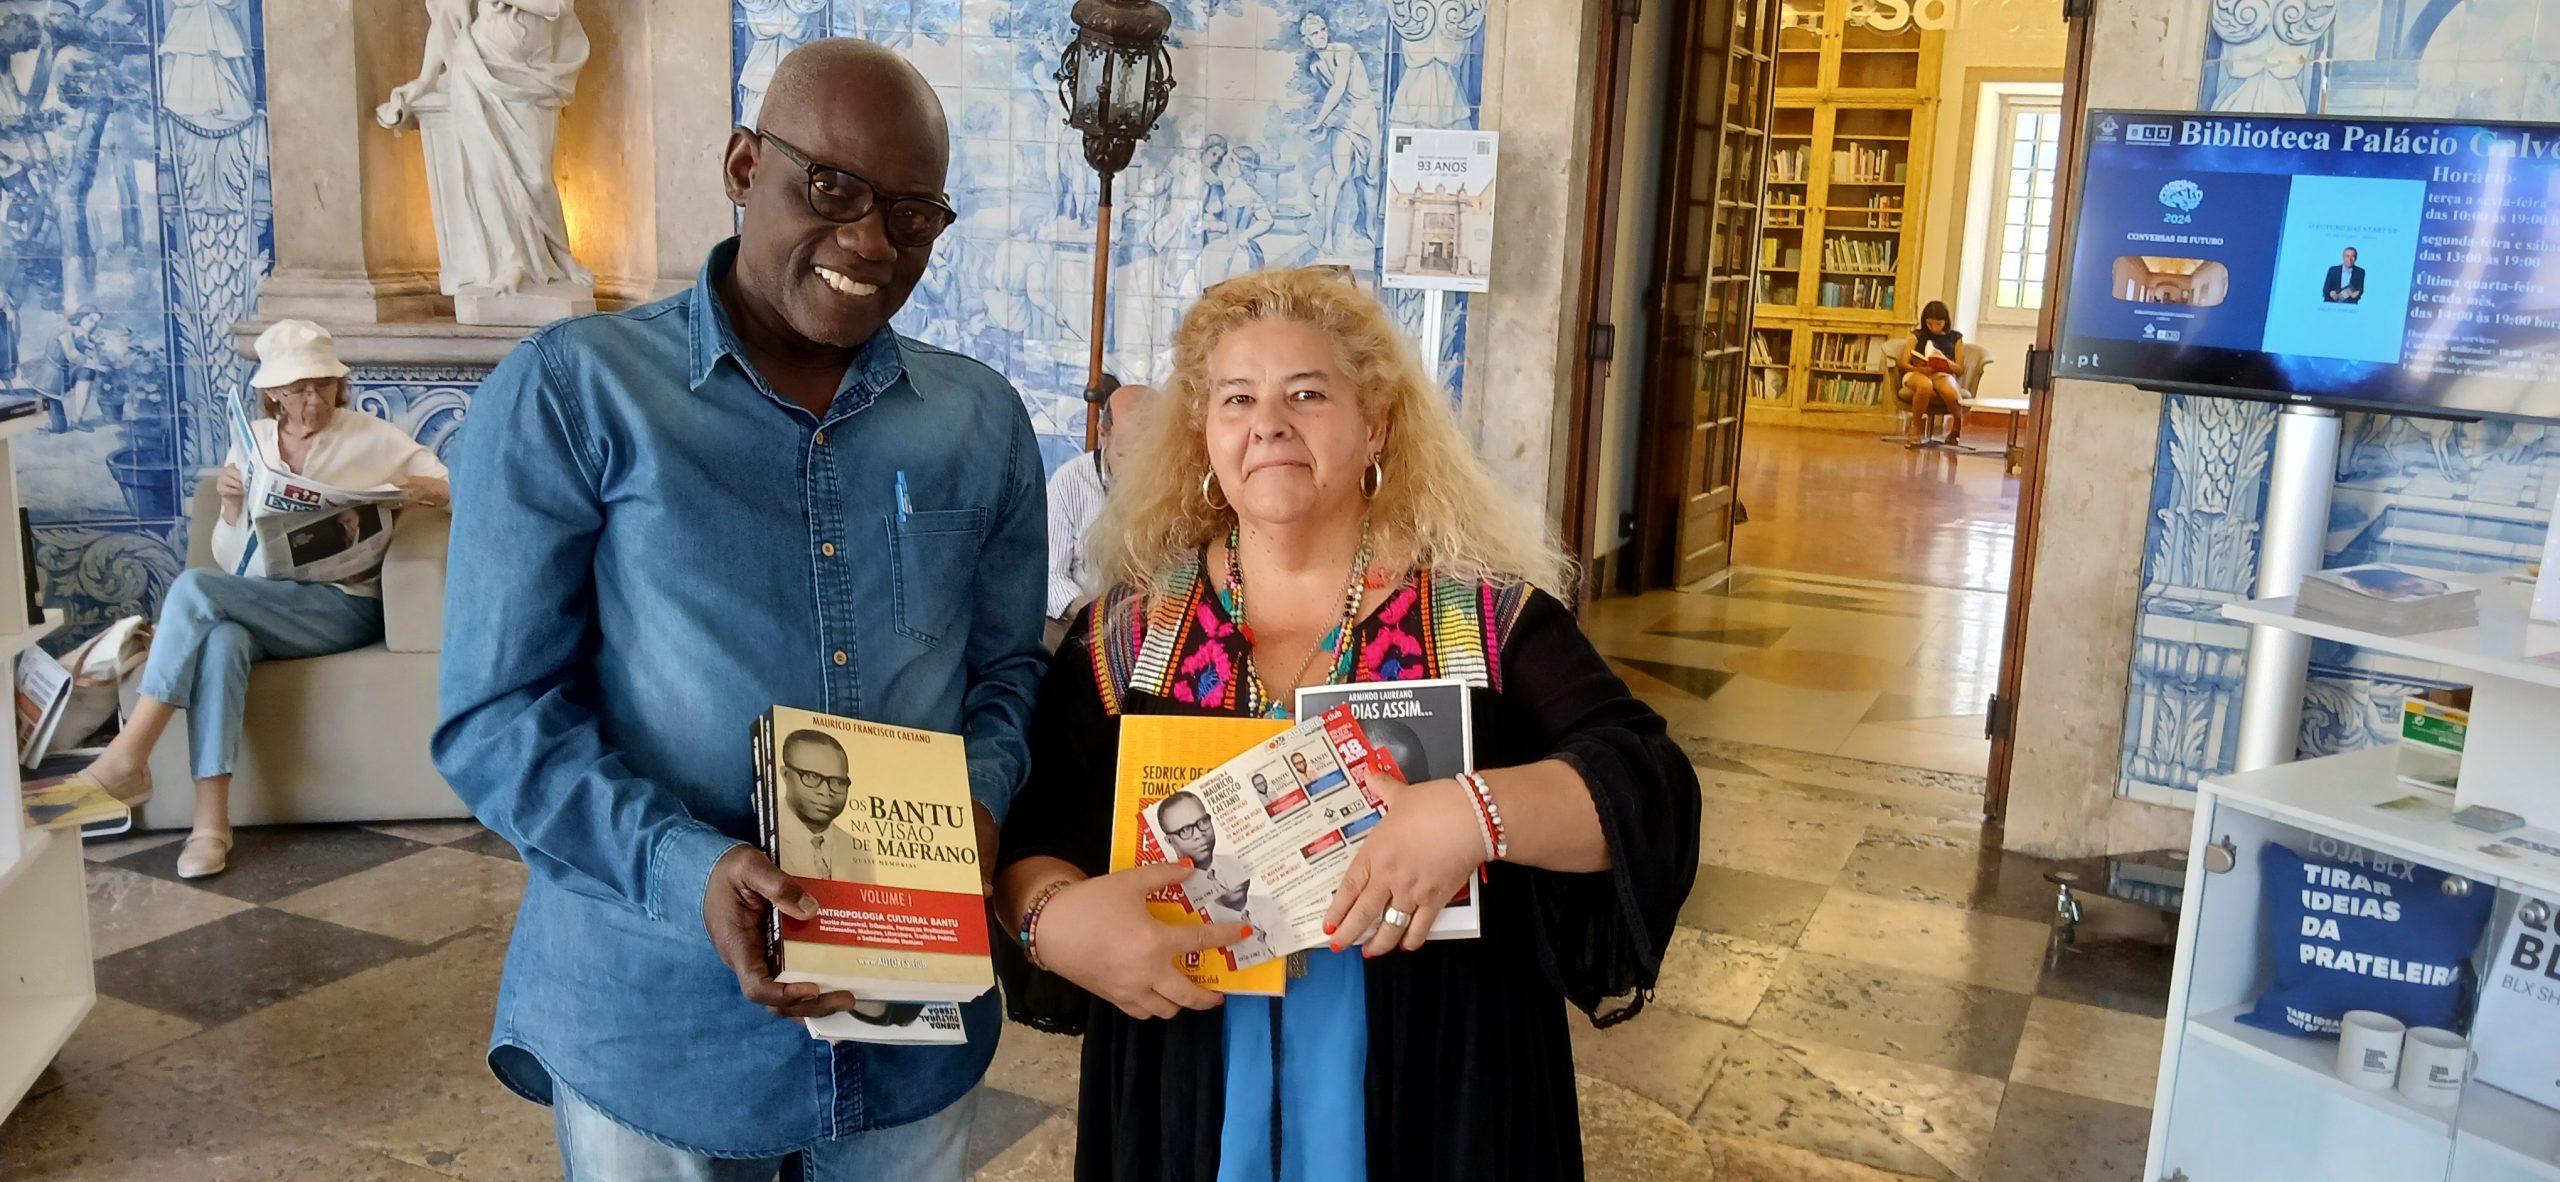 Entrega de obras literárias de Angola na Biblioteca Palácio Galveias em Lisboa